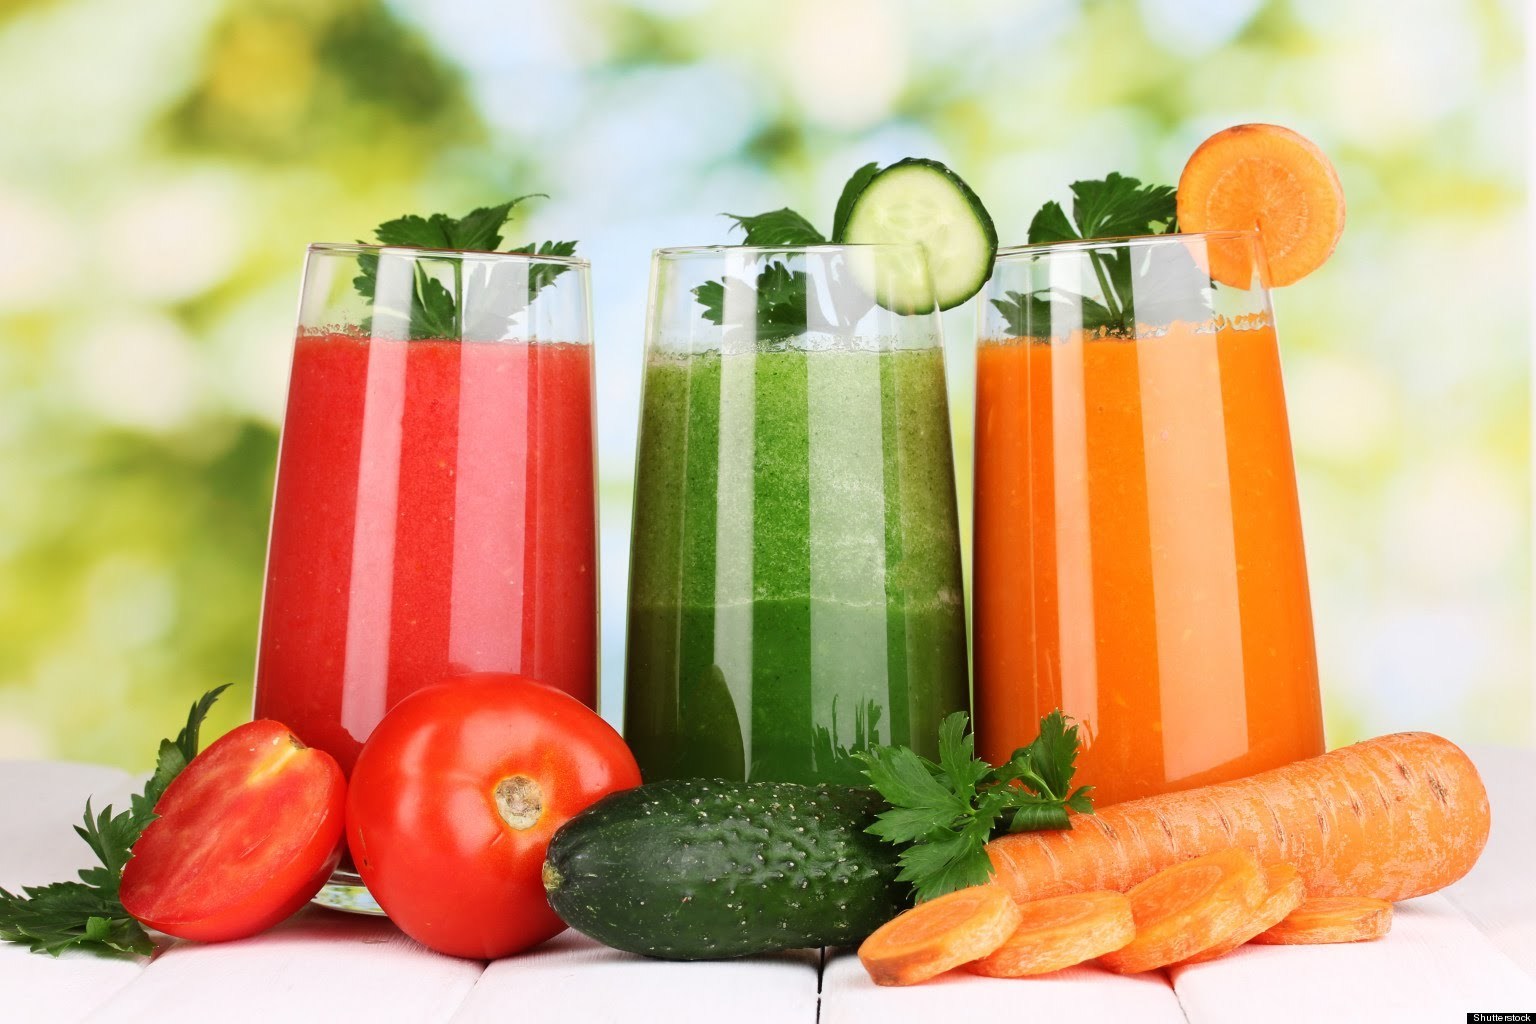 Sinh tố là chỉ đồ uống được chế đổi mới kể từ những loại hoa quả trái cây tươi tỉnh (Nguồn: Vietnamnet) 